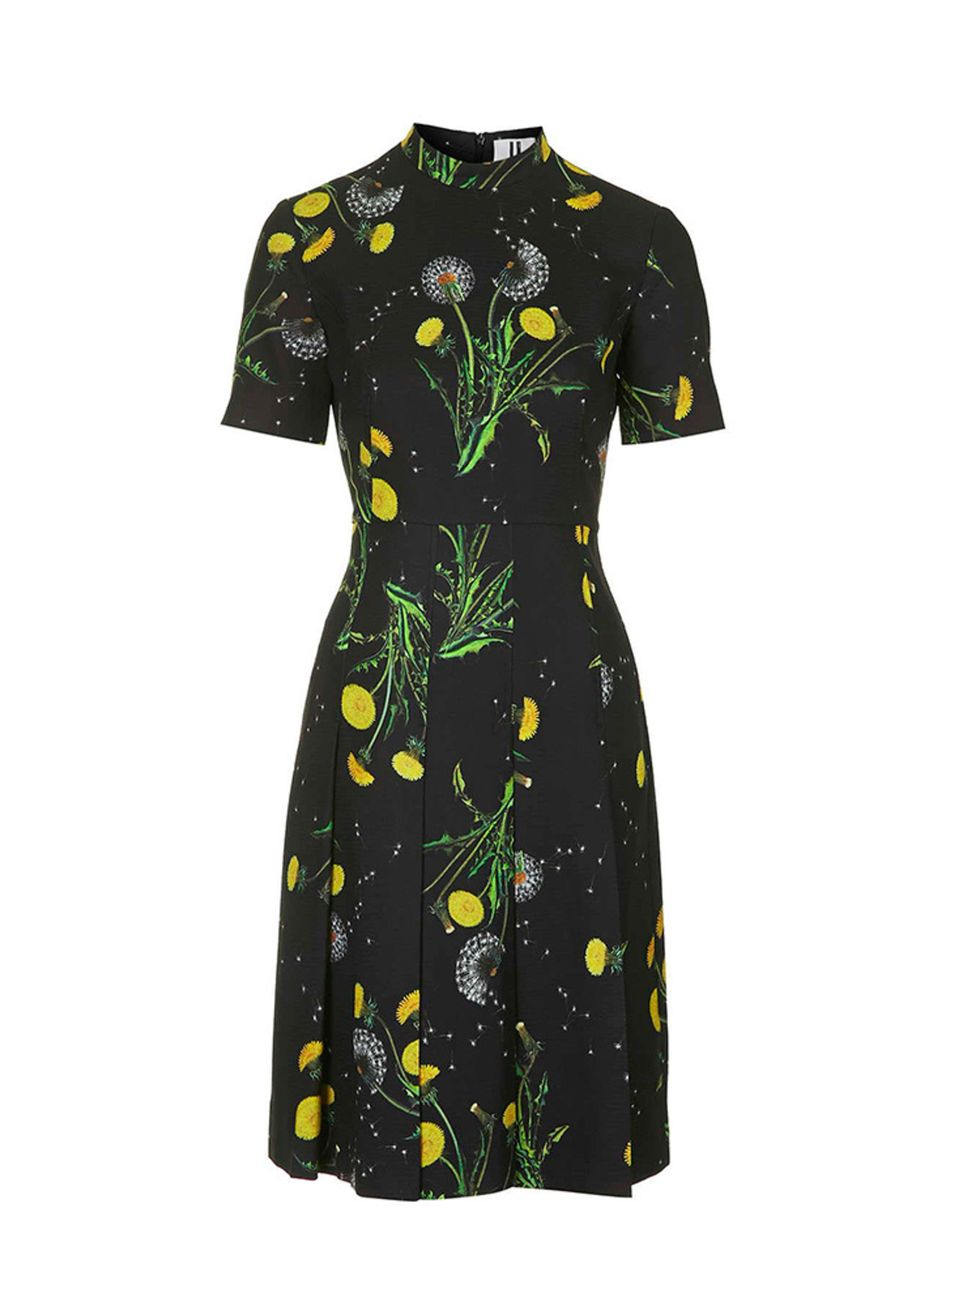 Topshop Unique dress, £225